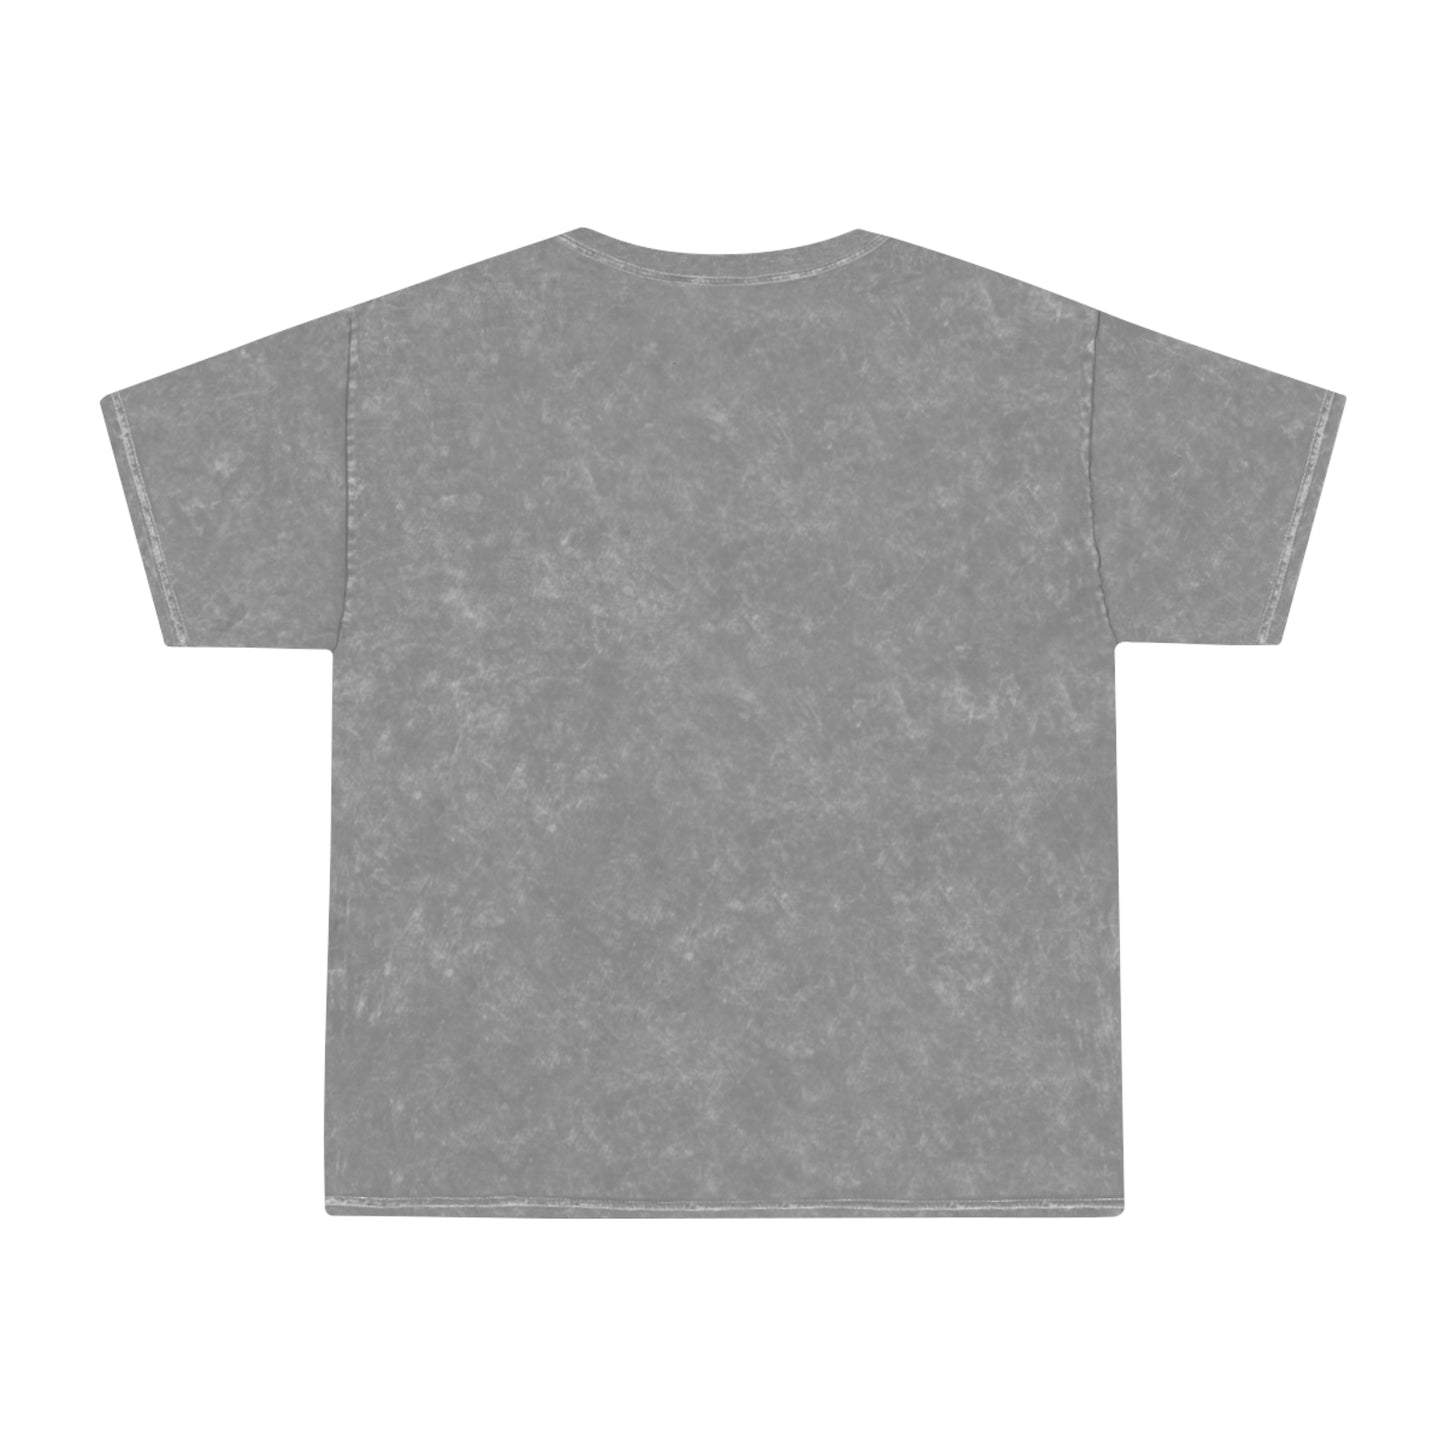 "TEAM JESUS" caps | Adult Unisex Mineral Wash T-Shirt | 2 Colors